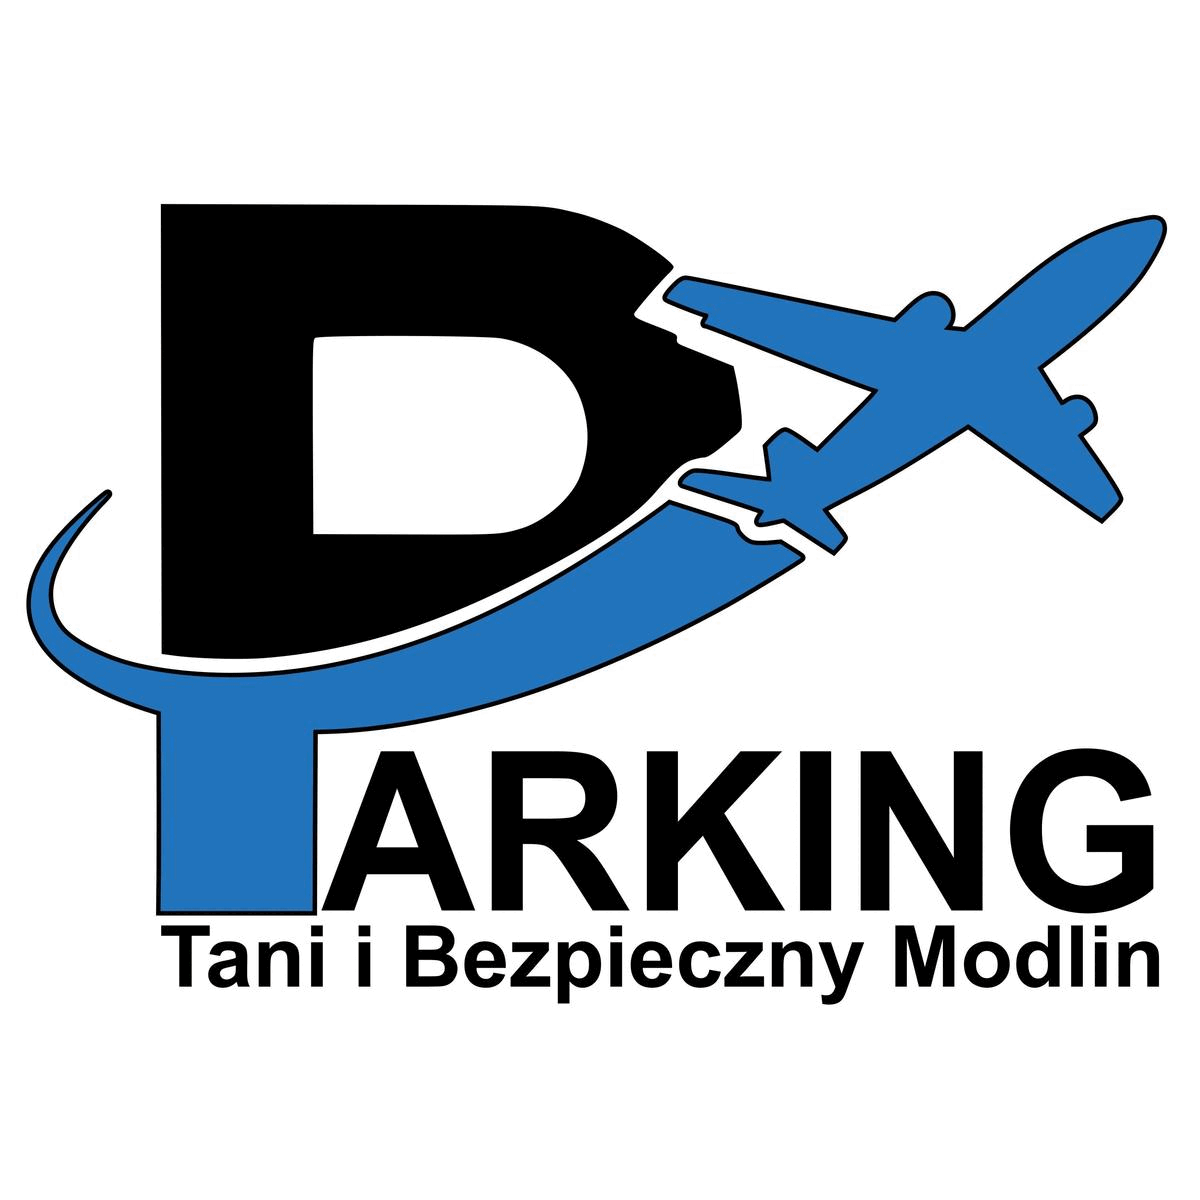 PARKING MODLIN PREMIUM Tani I Bezpieczny logo